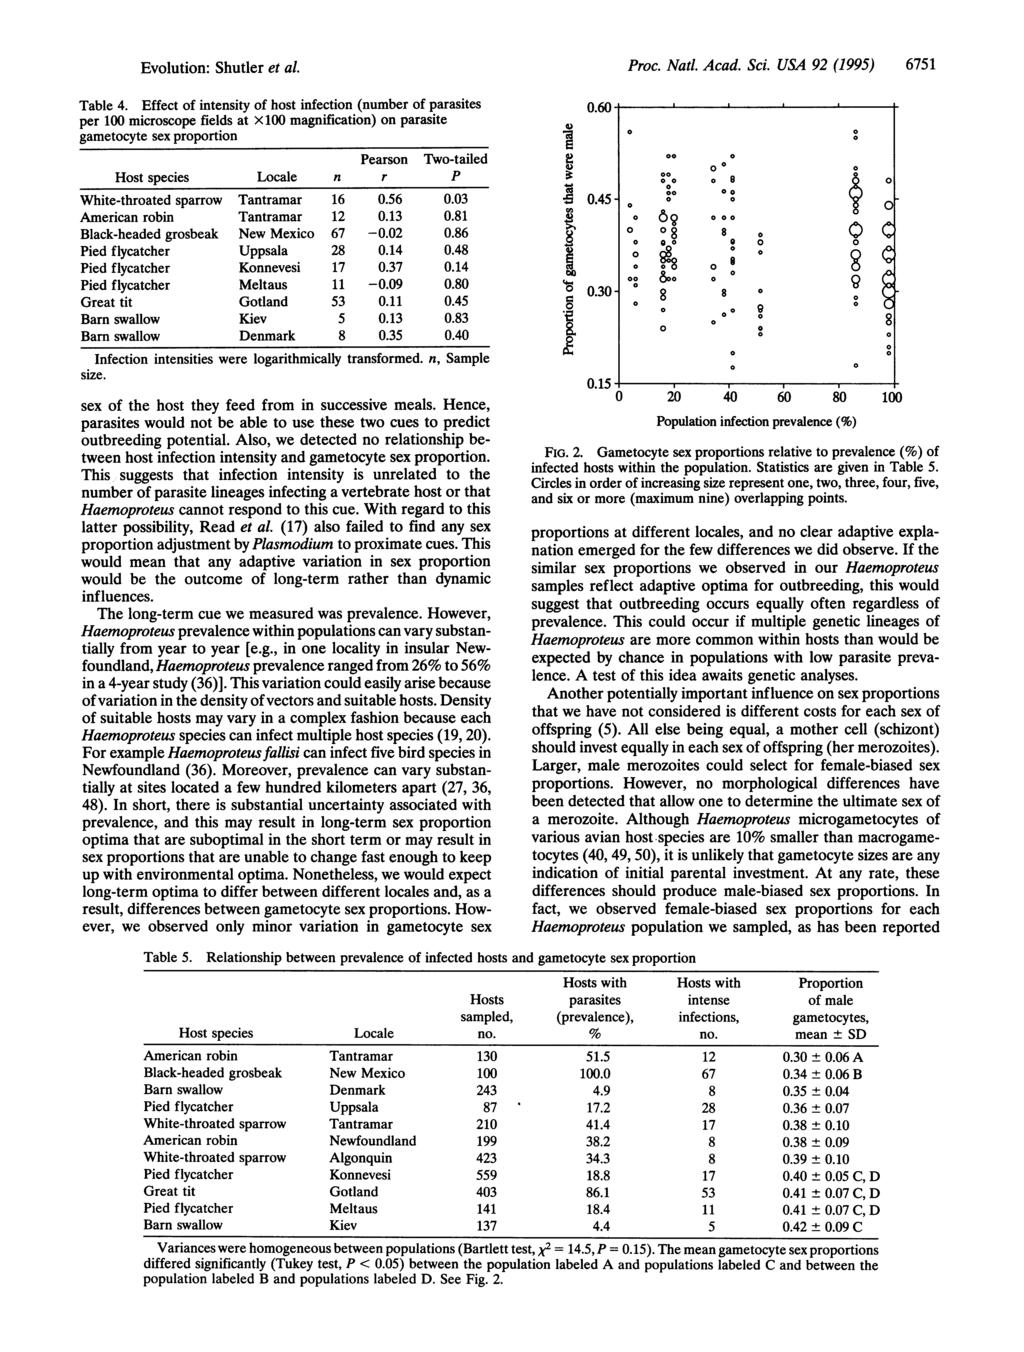 1-Pv.olution: Shutler et al. Proc. Natl. Acad. Sci. USA 92 (1995) 6751 Table 4.